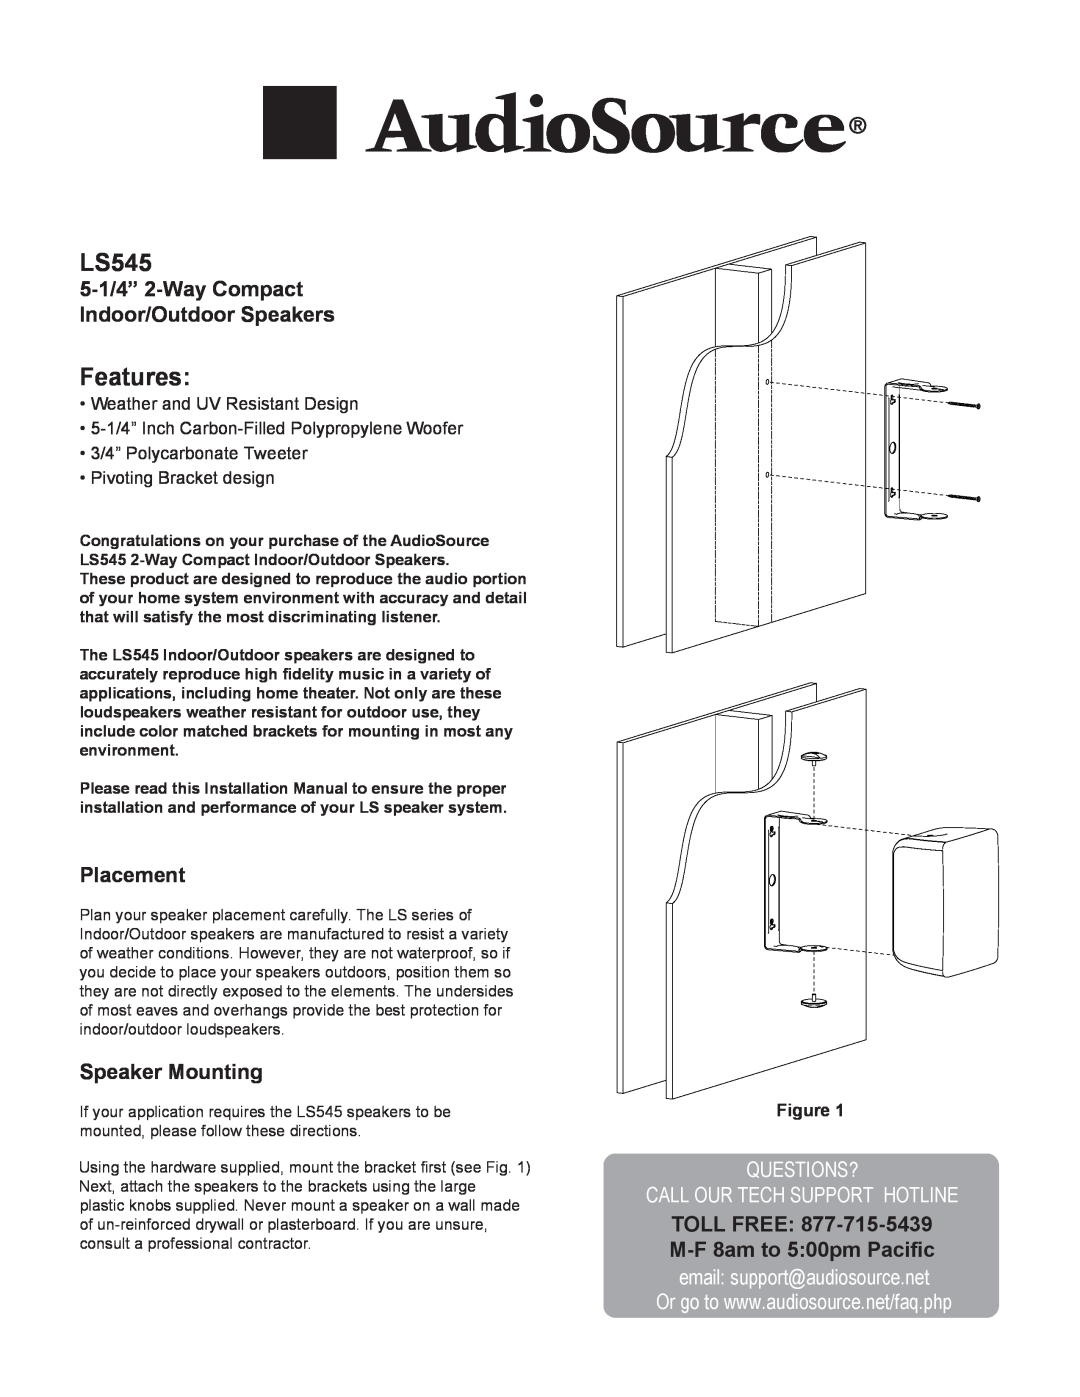 AudioSource 5-14" 2-Way Compac Indoor/Outdoor Speakers installation manual 5-1/4” 2-WayCompact Indoor/Outdoor Speakers 